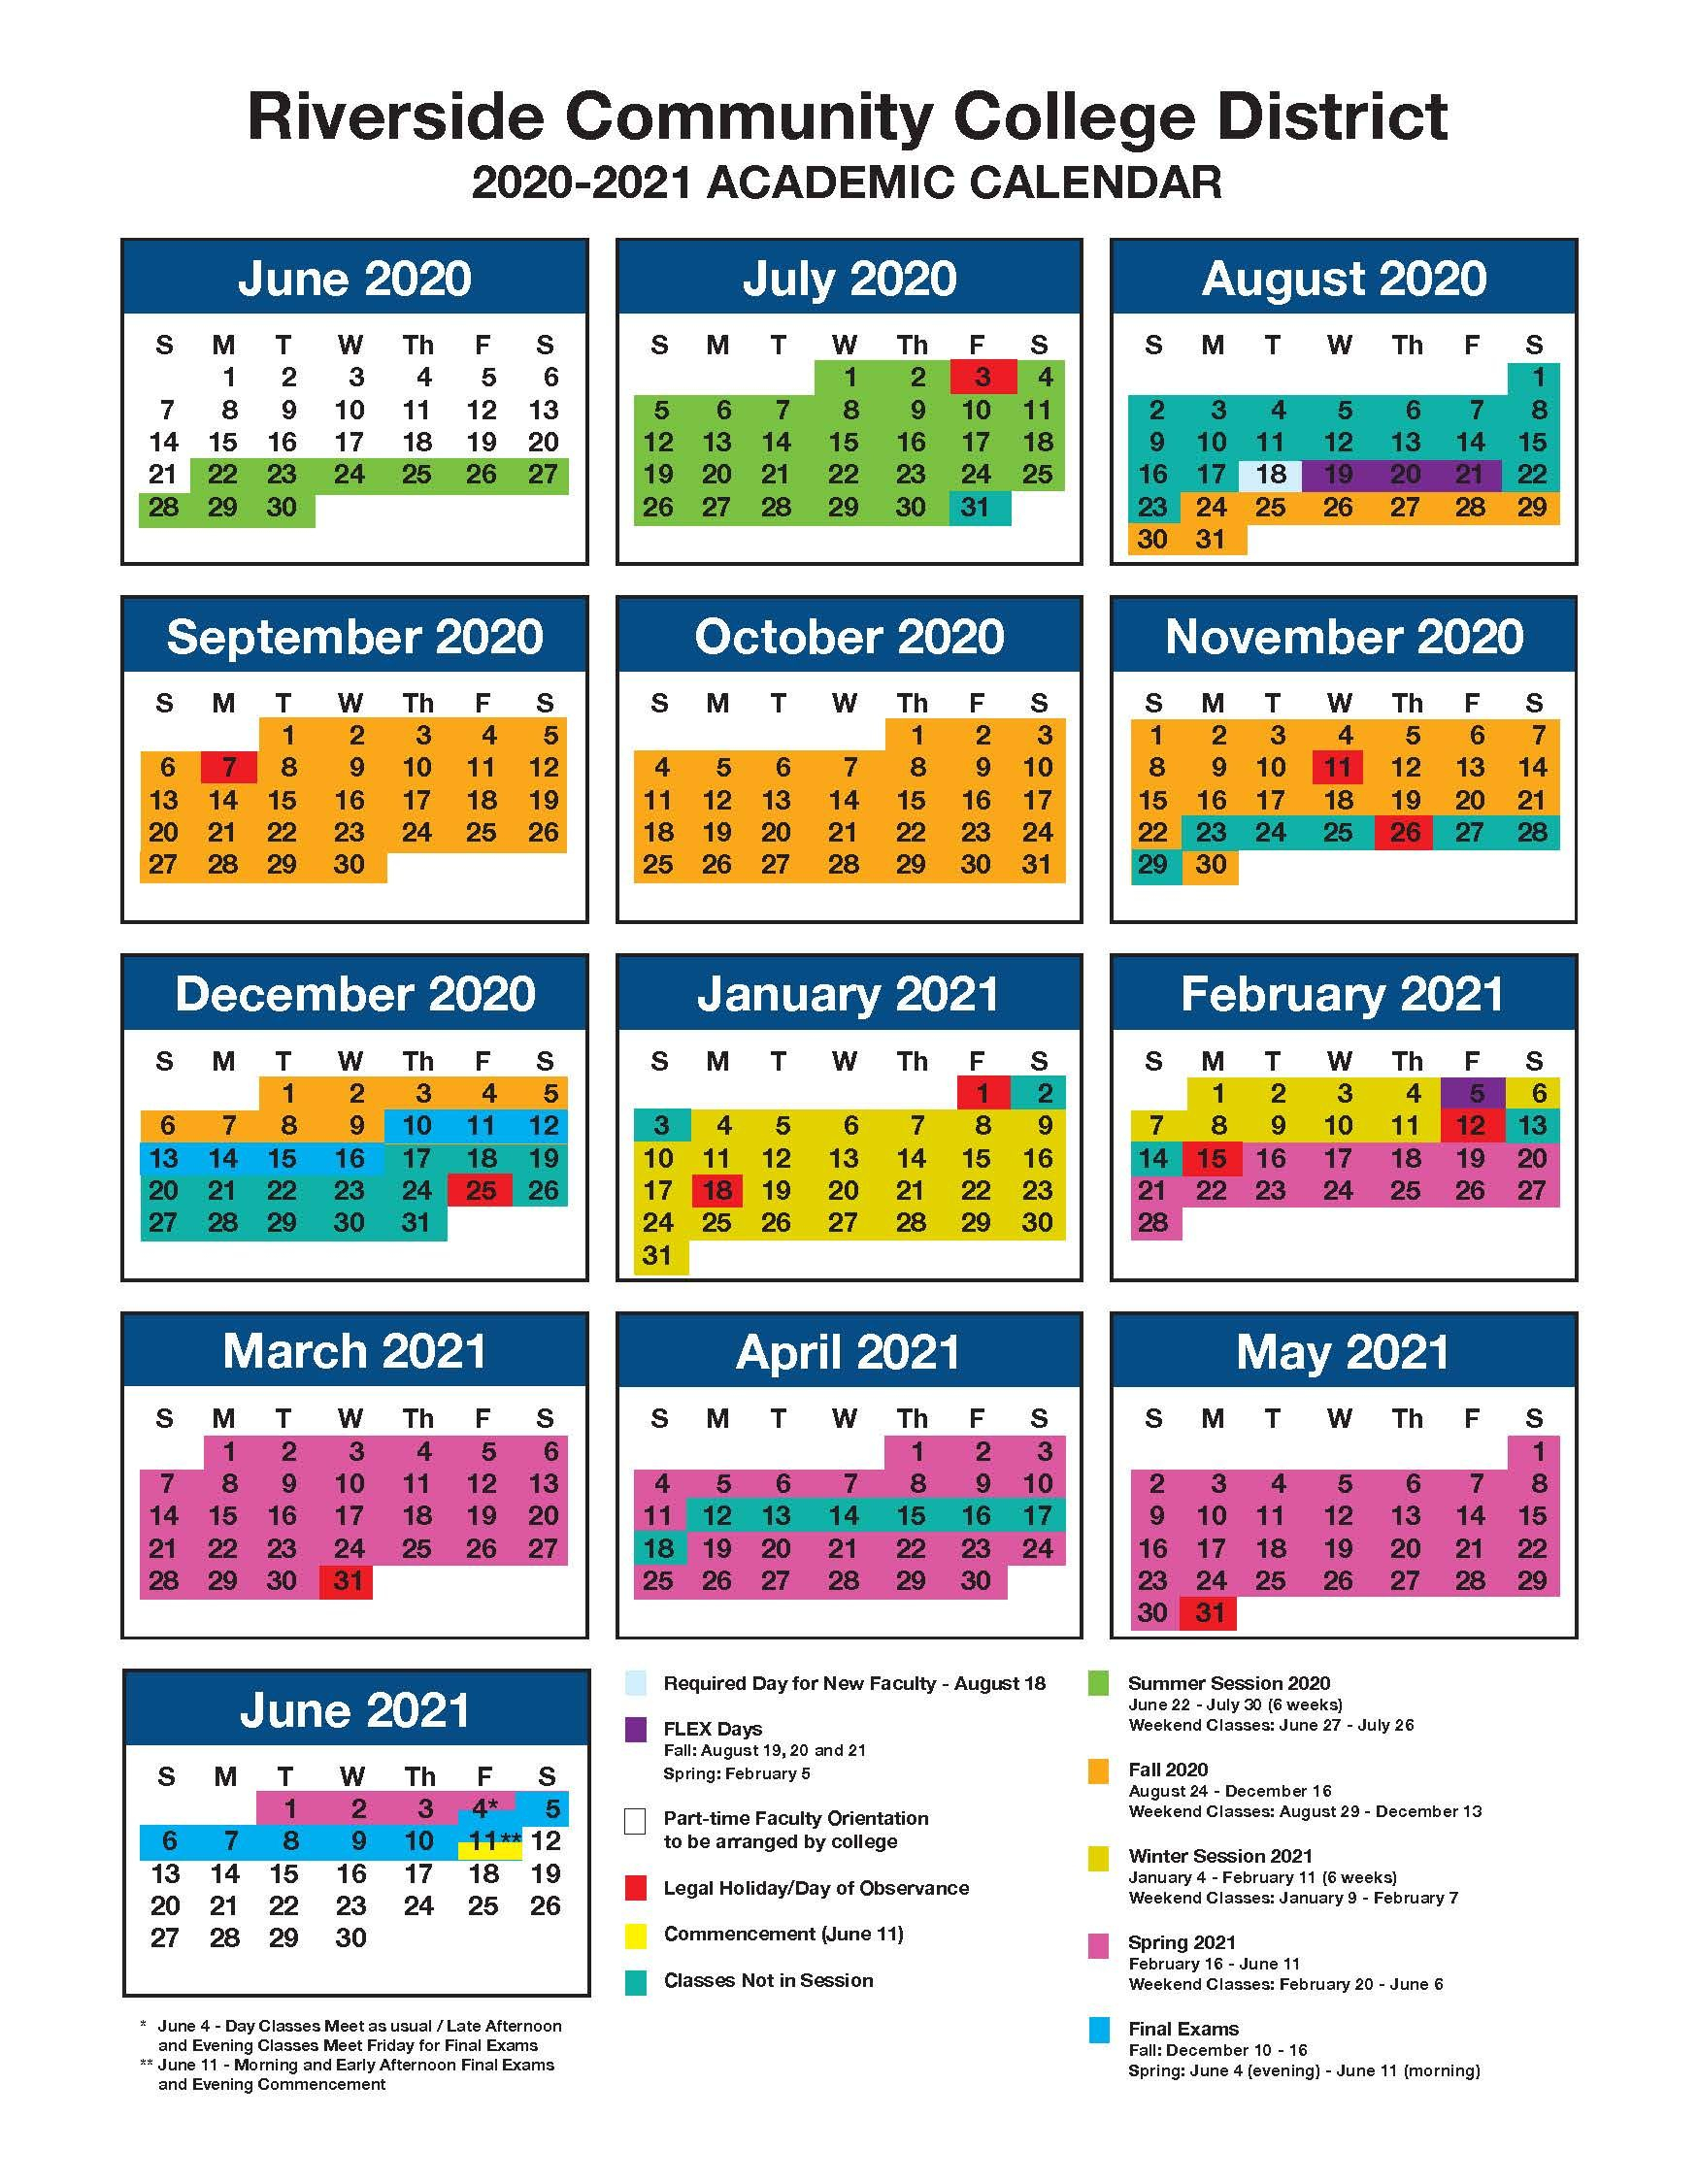 Spring 2022 And May 2022 Ksu Academic Calendar - Holiday